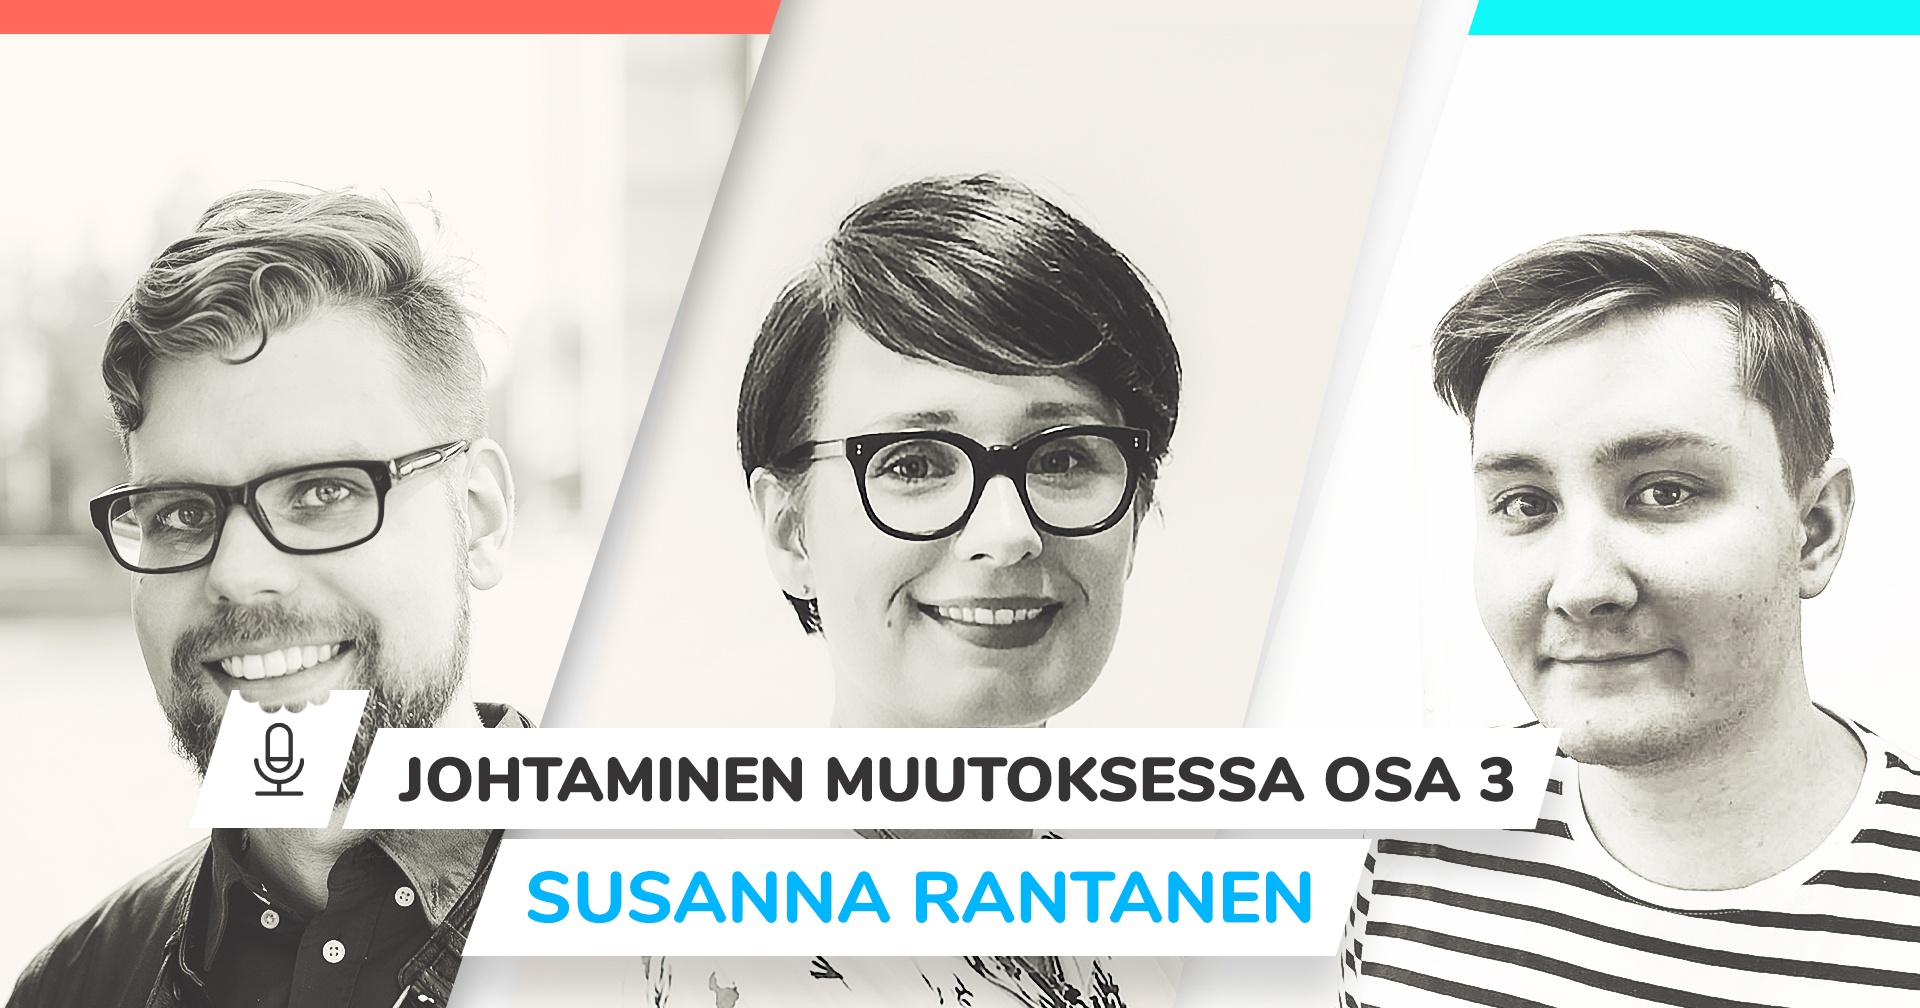 Johtaminen muutoksessa - Susanna Rantanen, Emine